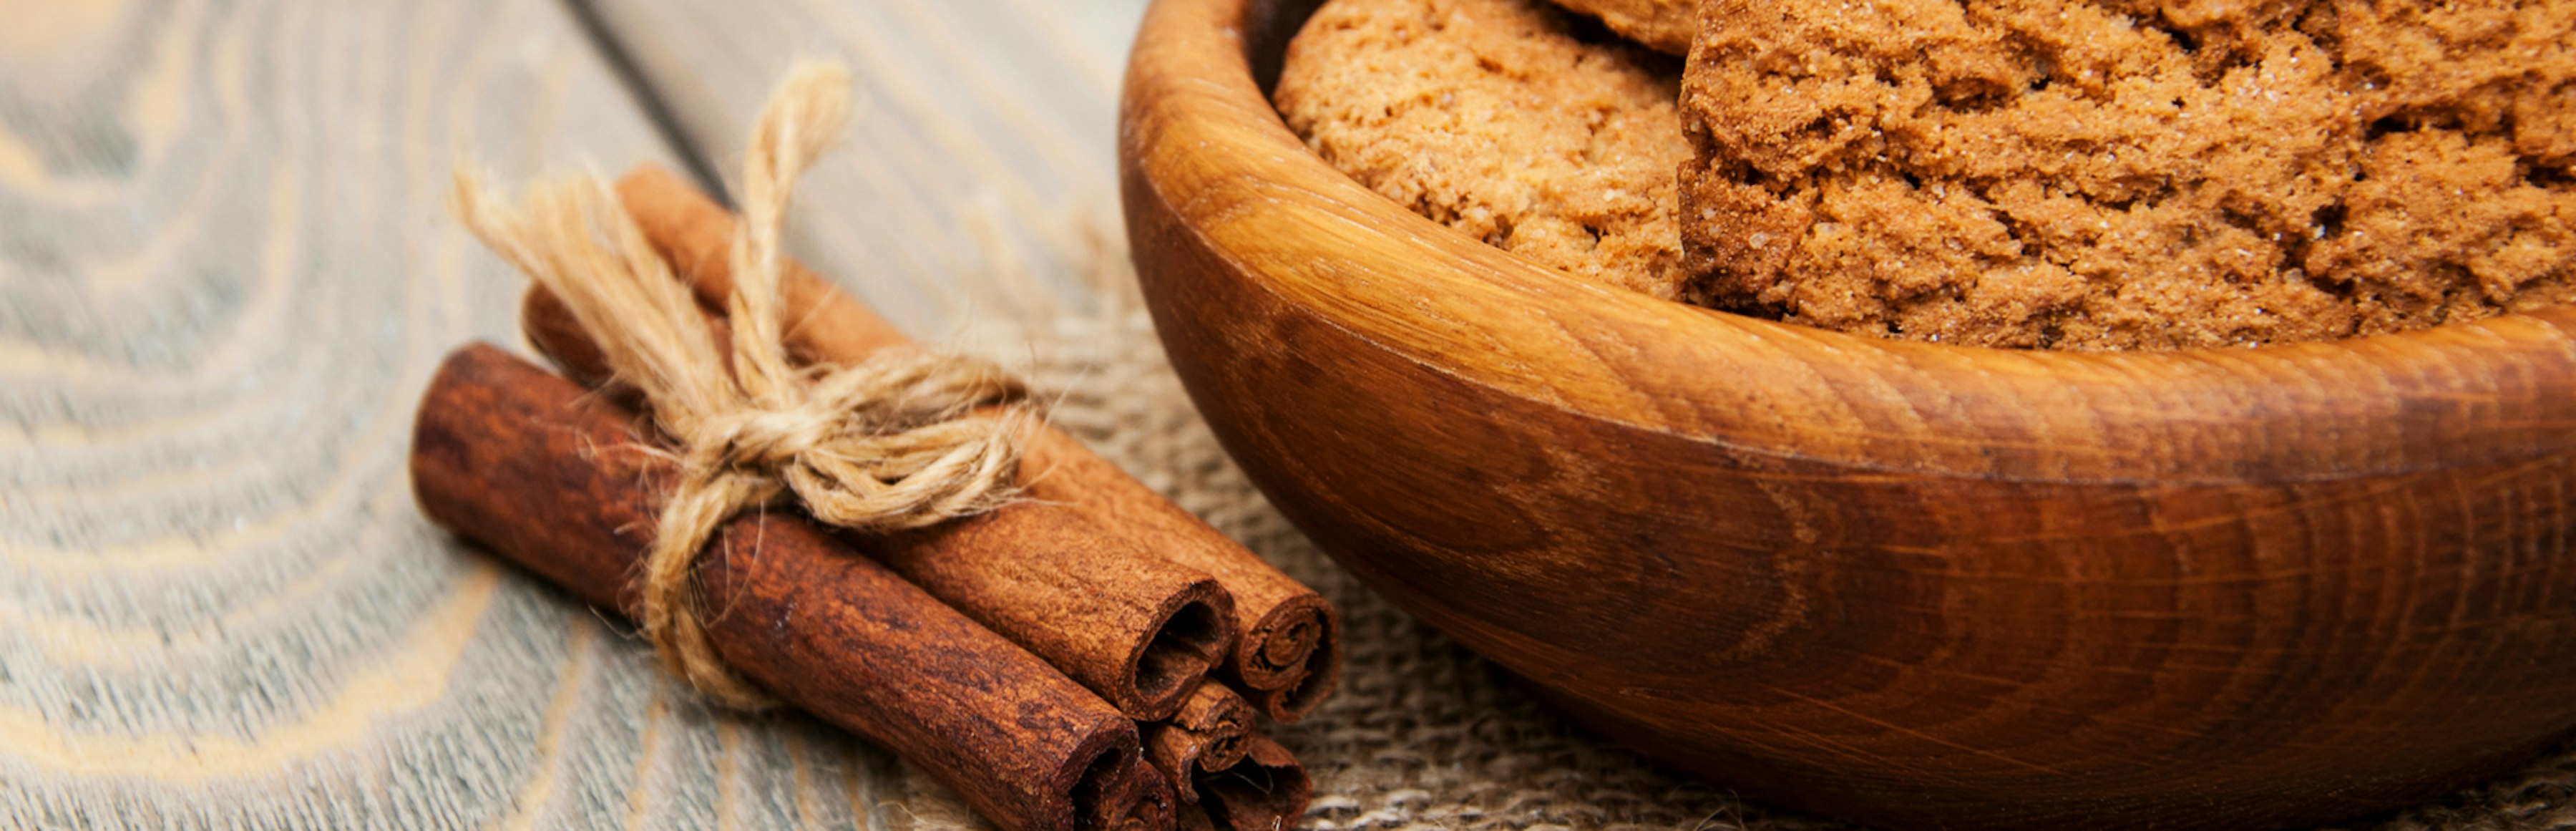 Top 10 Benefits of Cinnamon